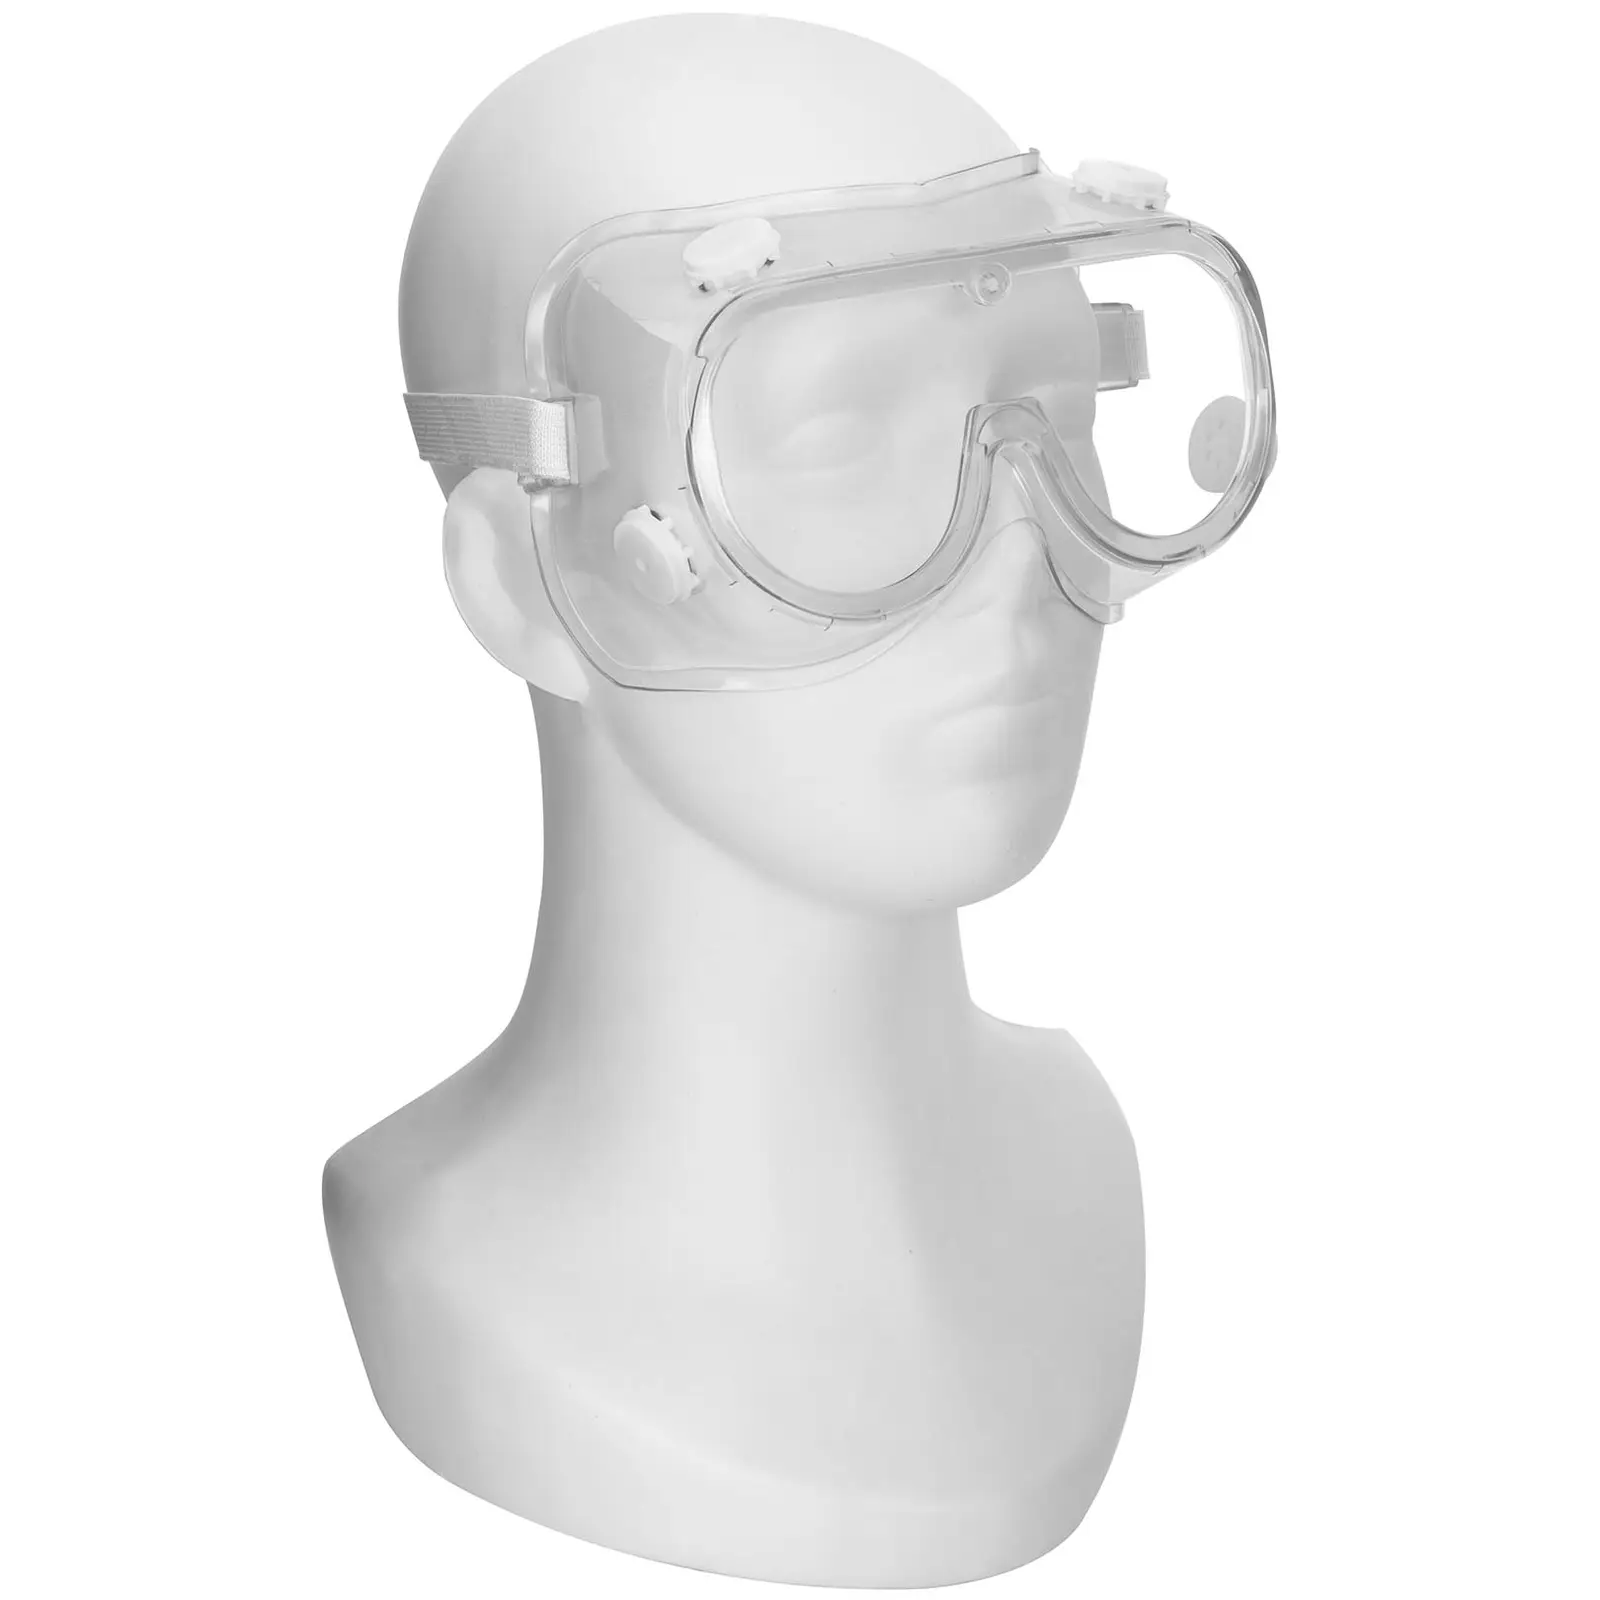 Óculos de proteção - conjunto de 3 un.